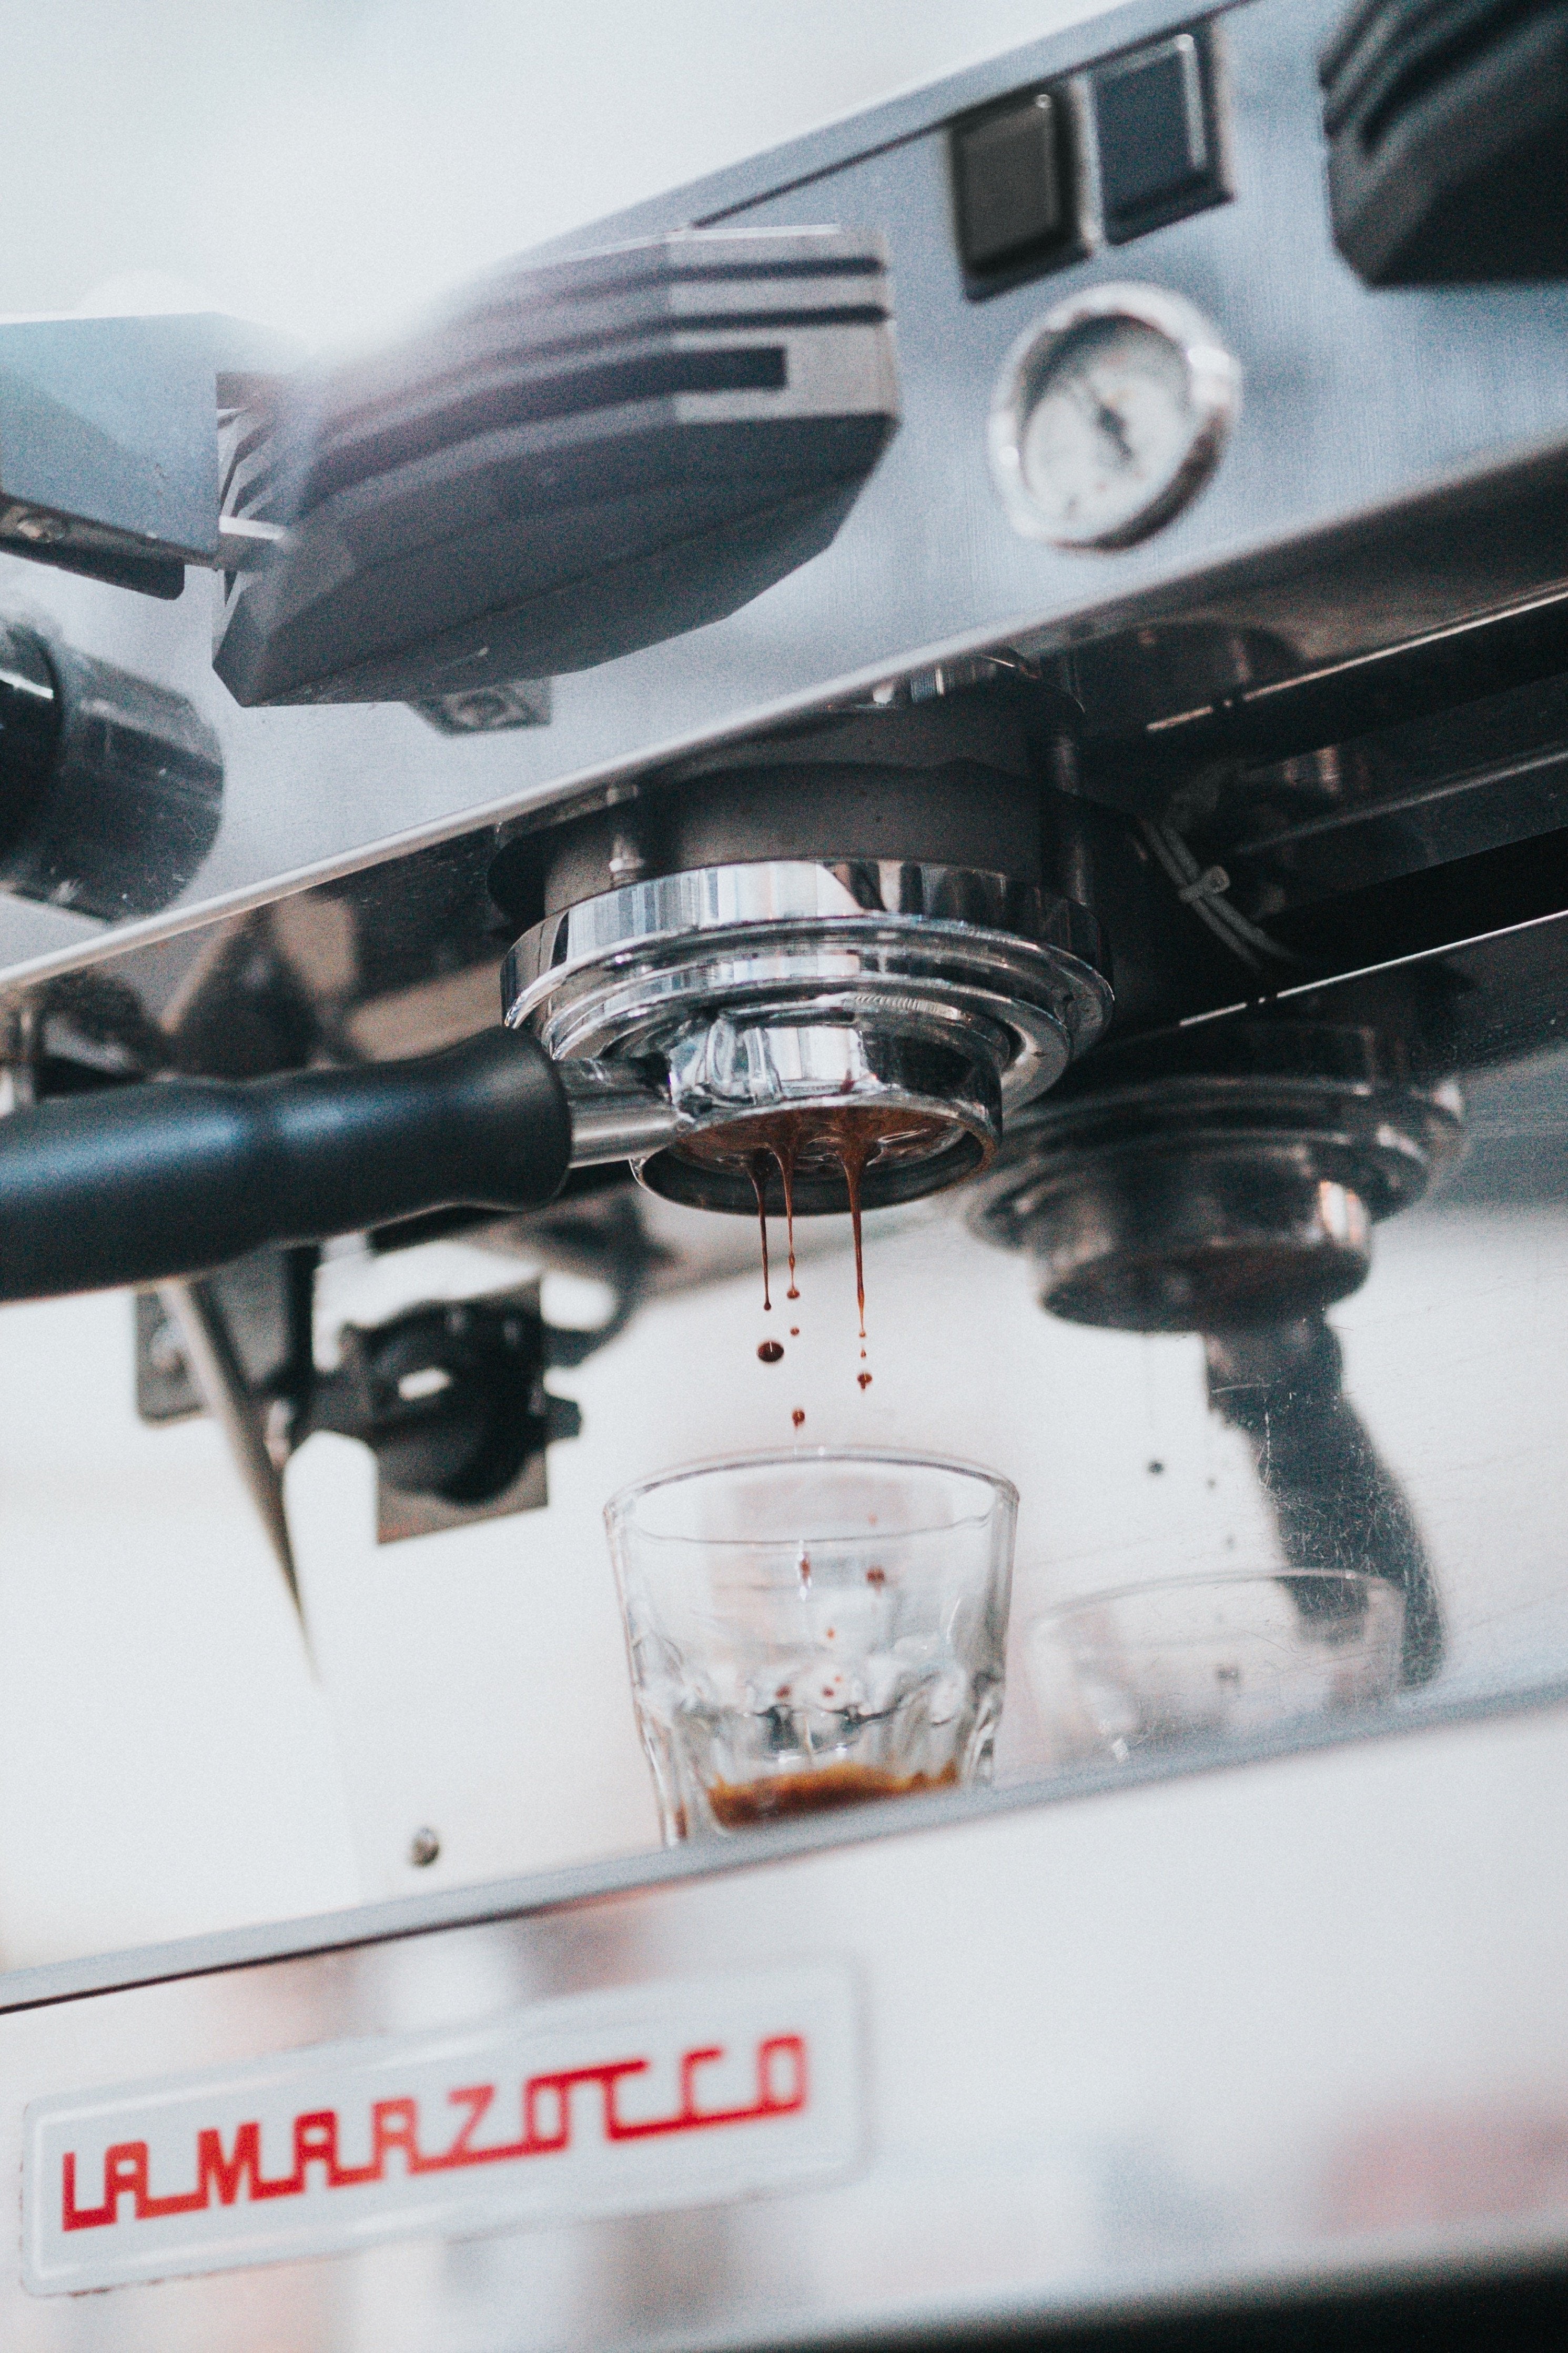 Pulling a shot of espresso on a La Marzocco espresso machine.